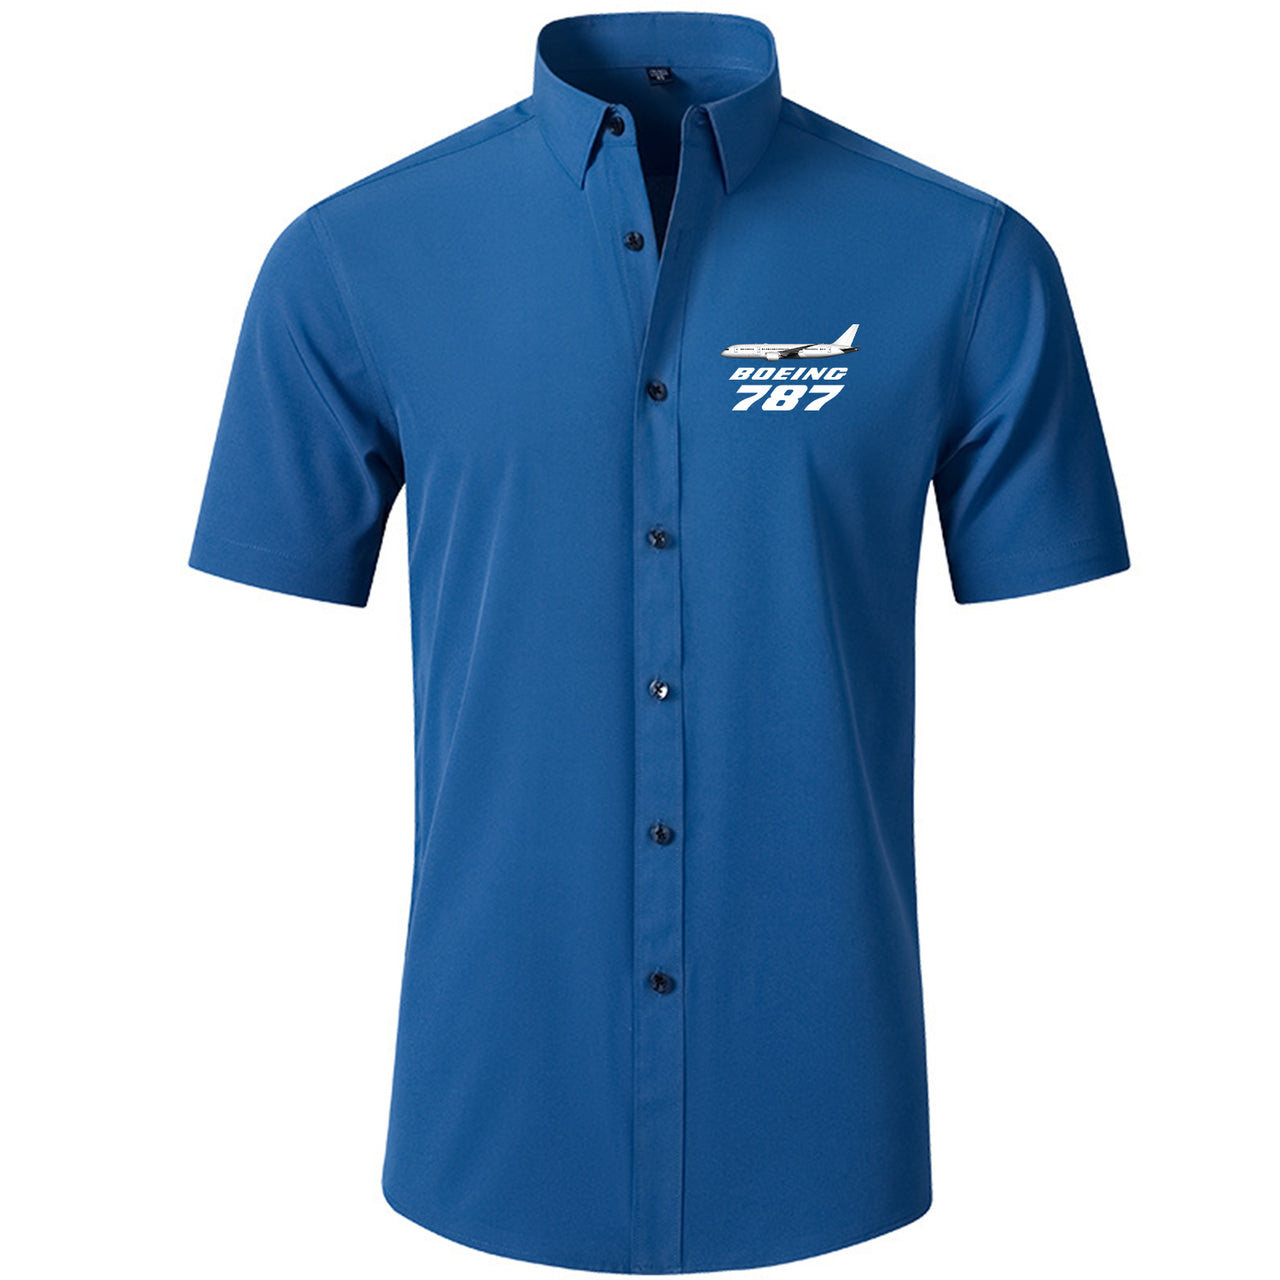 The Boeing 787 Designed Short Sleeve Shirts